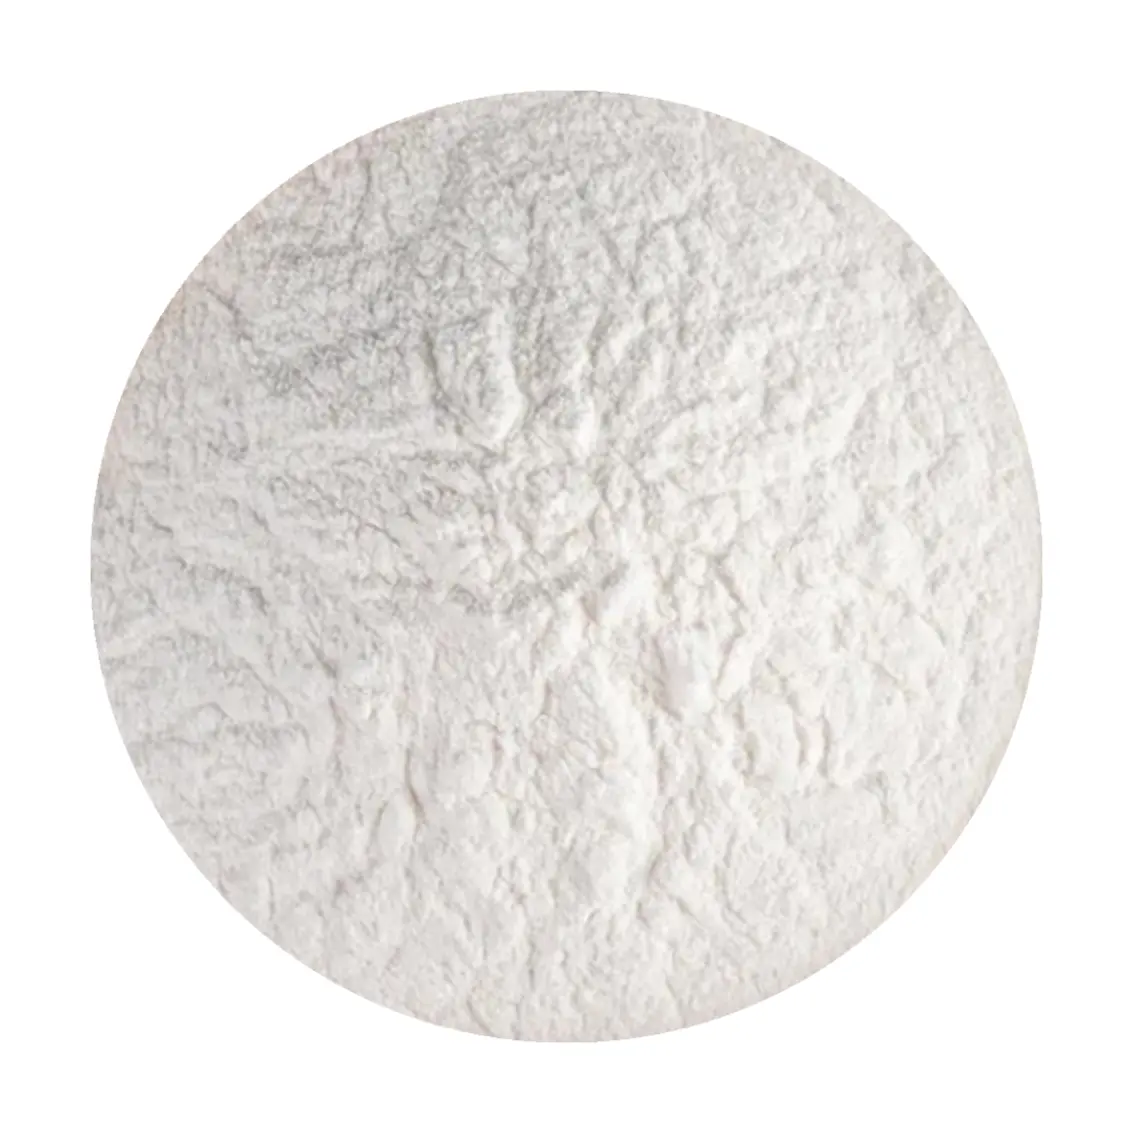 Fornitore all'ingrosso di concentrato di proteine del siero di latte all'ingrosso nutrizione 100% proteine del siero di latte in polvere